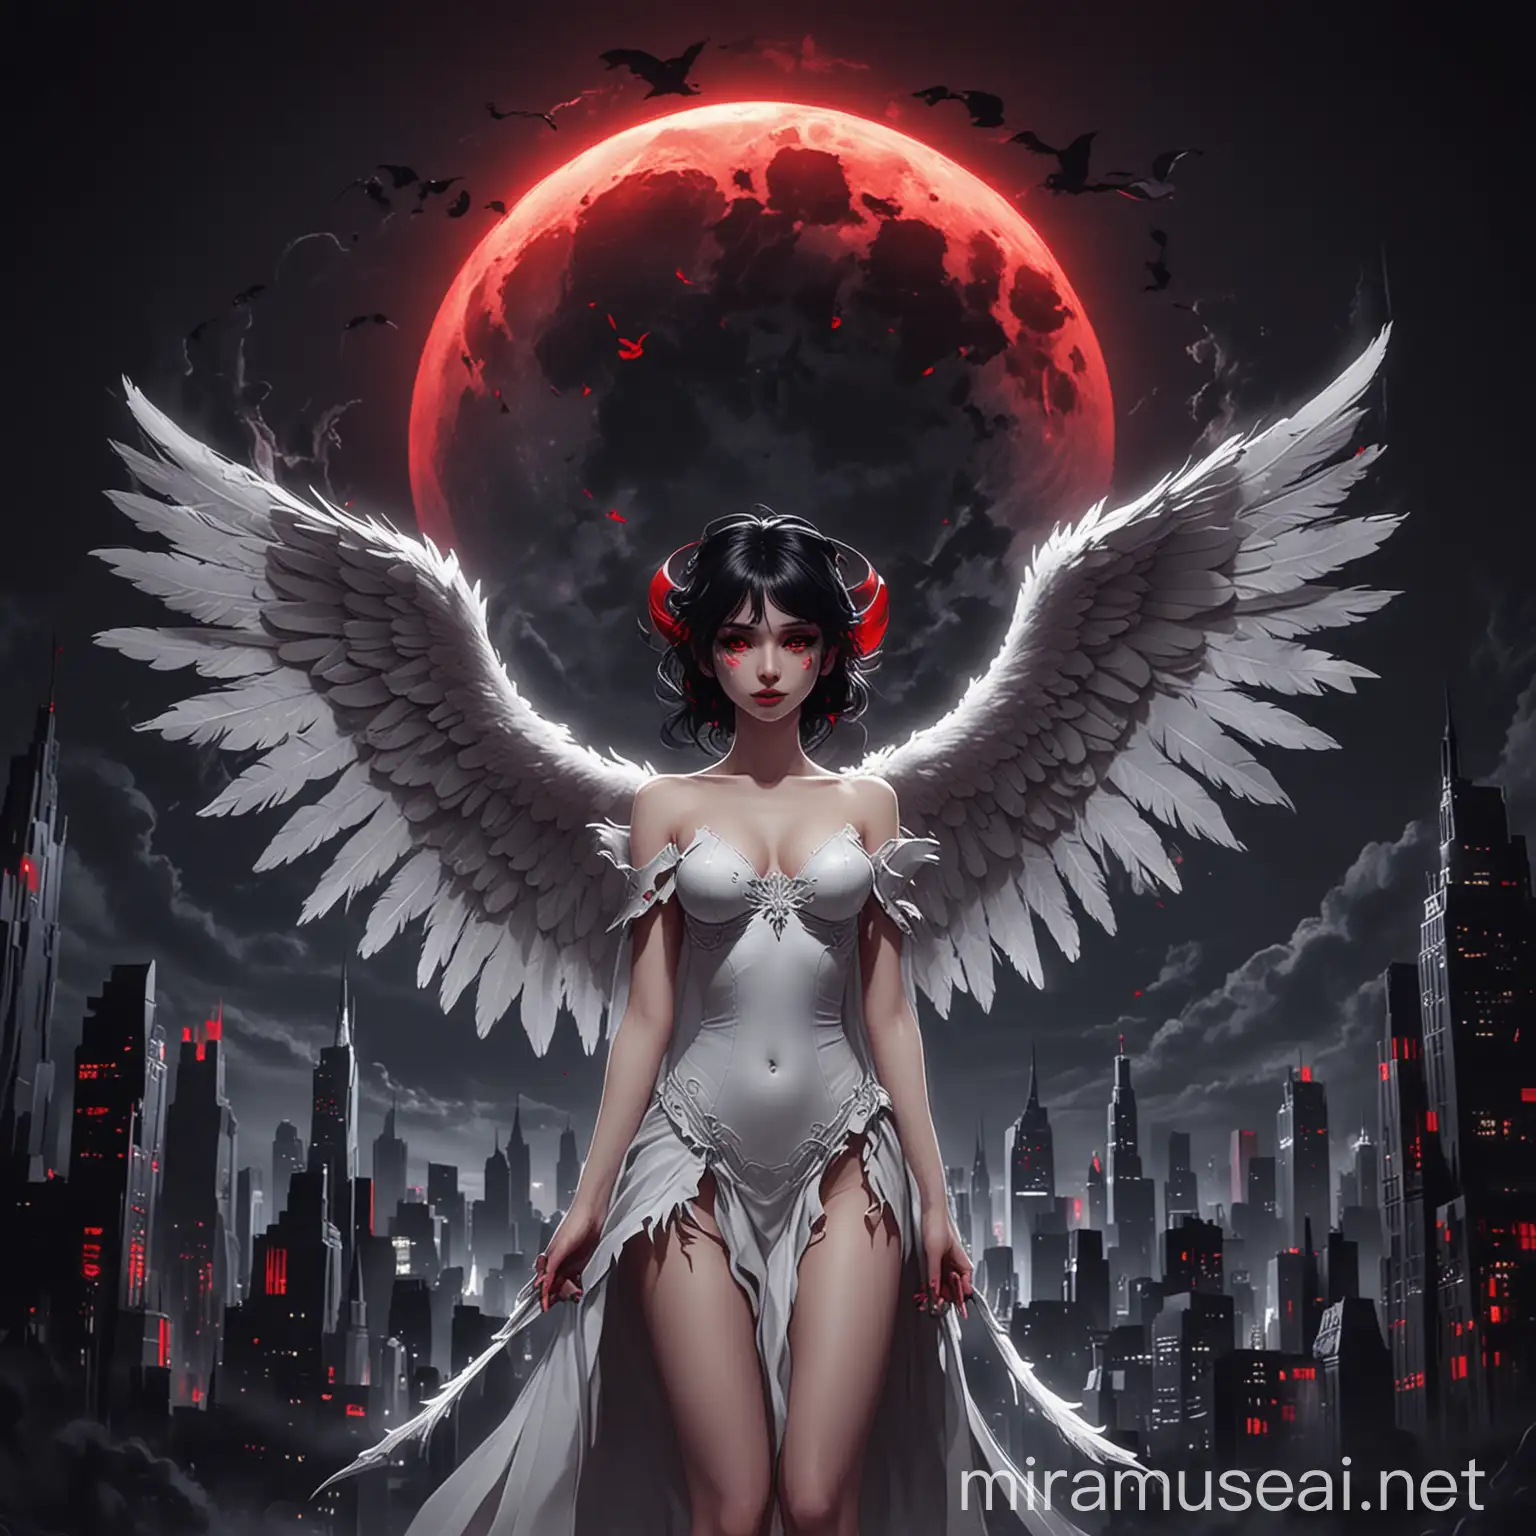 Ангел с крыльями дьявола, белый ангел, черный крылья, черные рога, красные глаза, фон большой ночной город, полнолуние, мультфильм анимация, 2D, минимализм